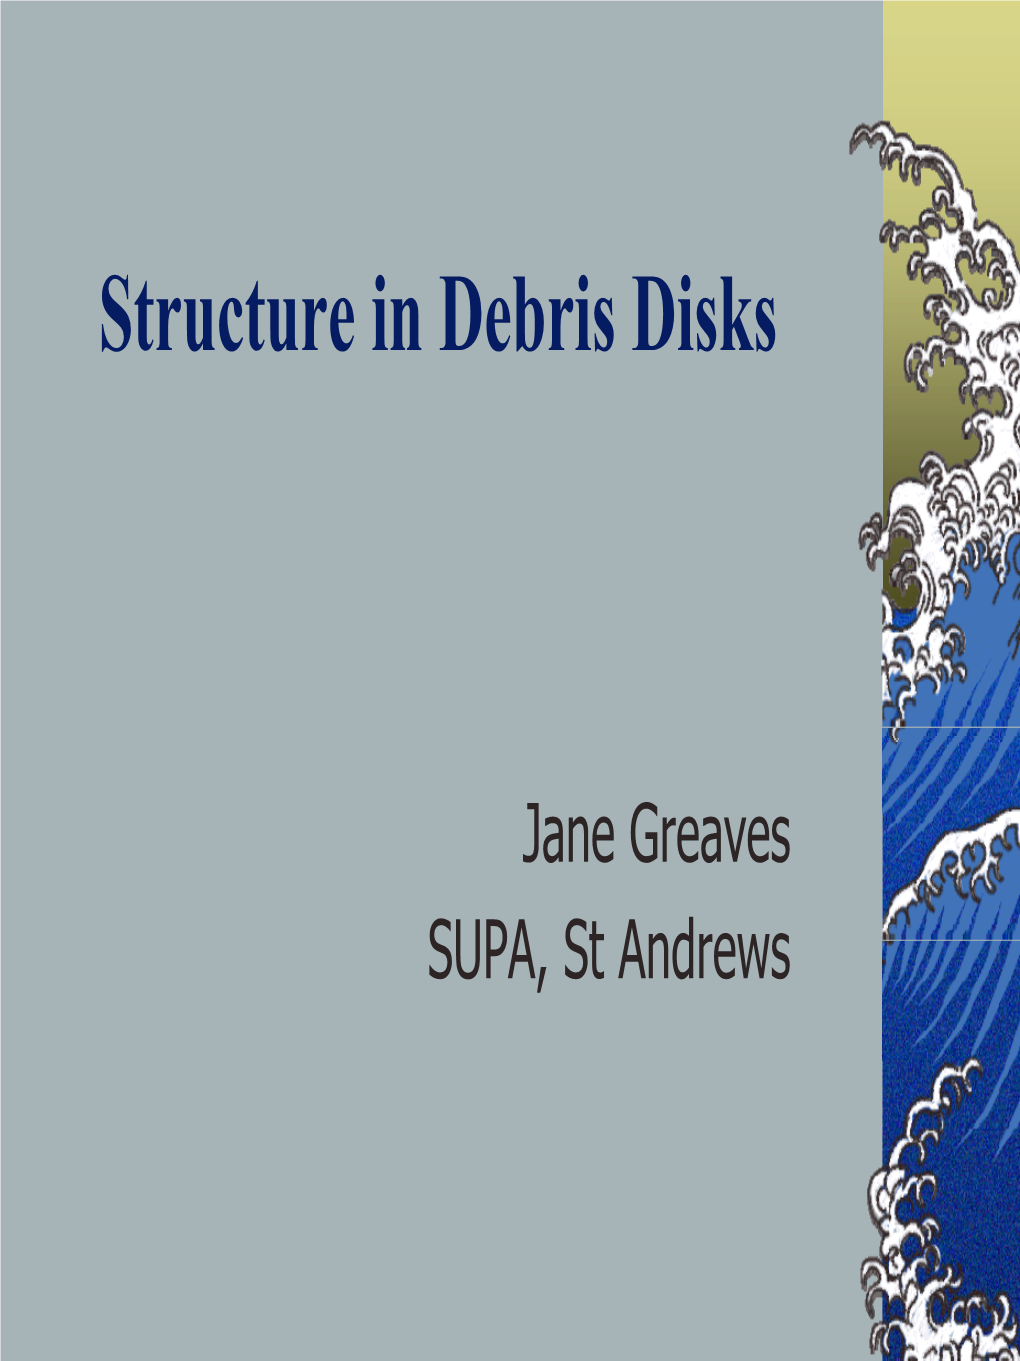 Observations of Structure in Debris Disks